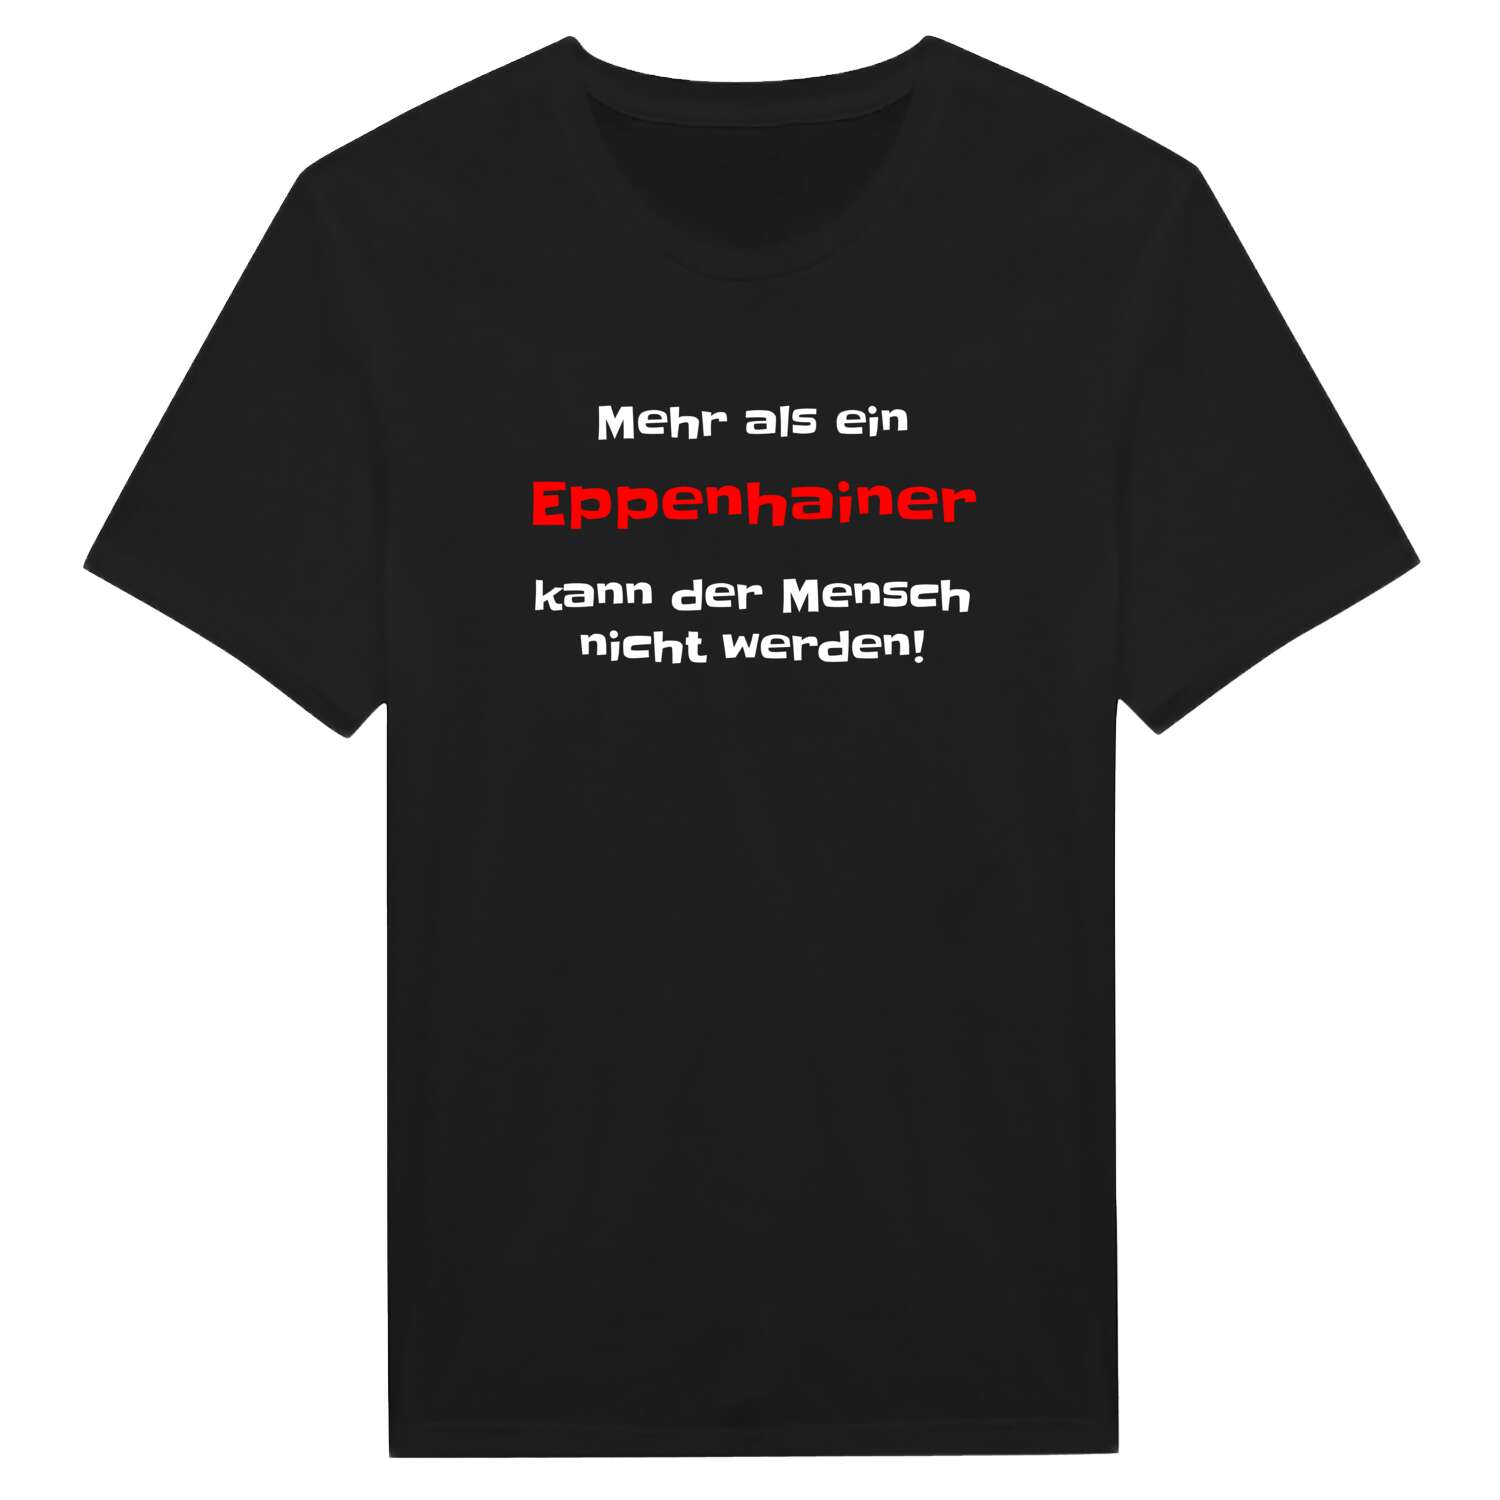 Eppenhain T-Shirt »Mehr als ein«